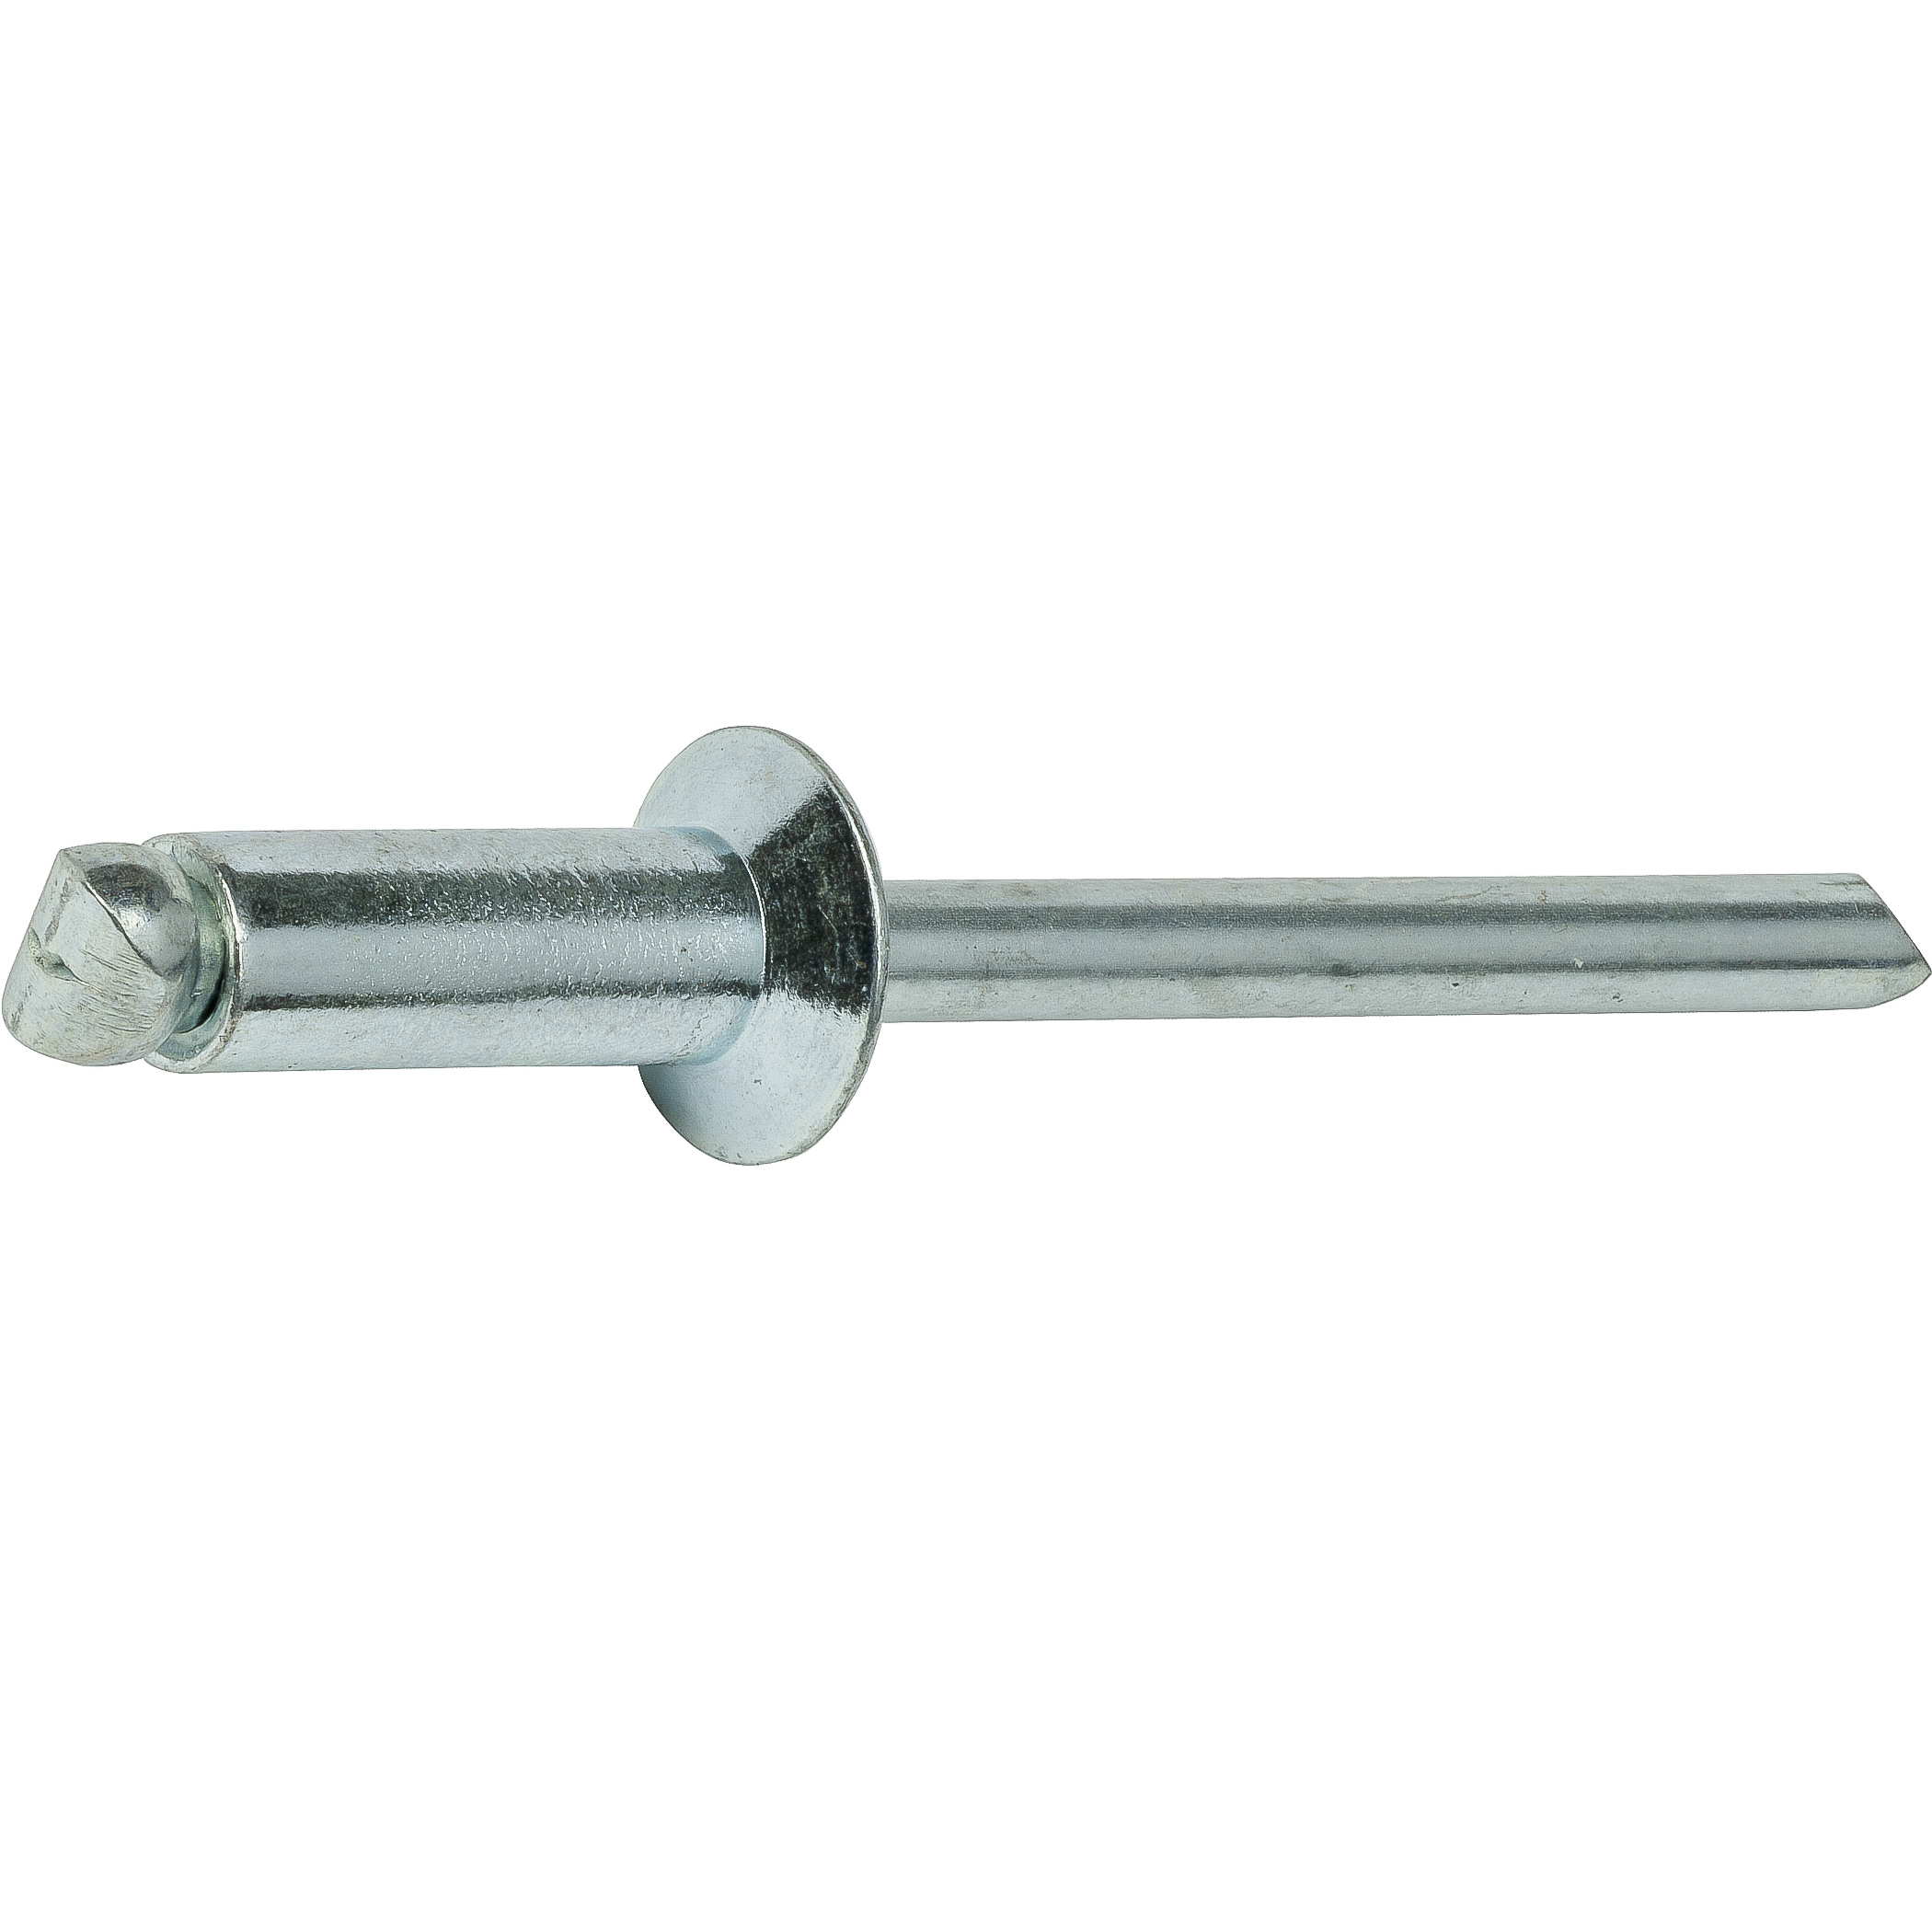 Aluminum Pop Rivets 3/16" x 1/2" Steel Mandrel Flat Countersunk Head Qty 50 